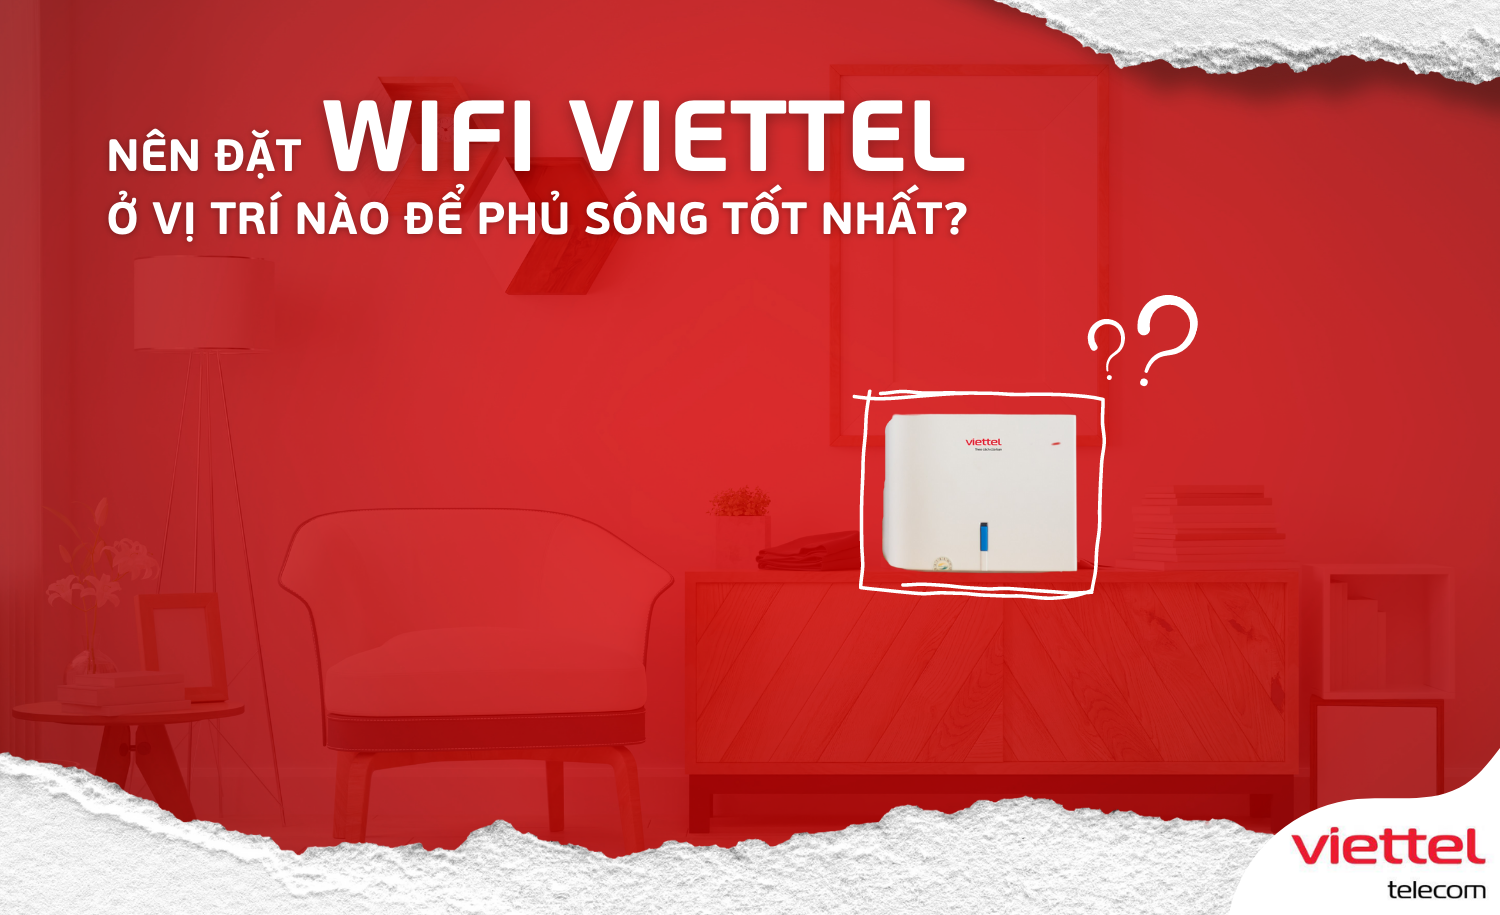 Nên đặt wifi Viettel ở vị trí nào để phủ sóng tốt nhất?